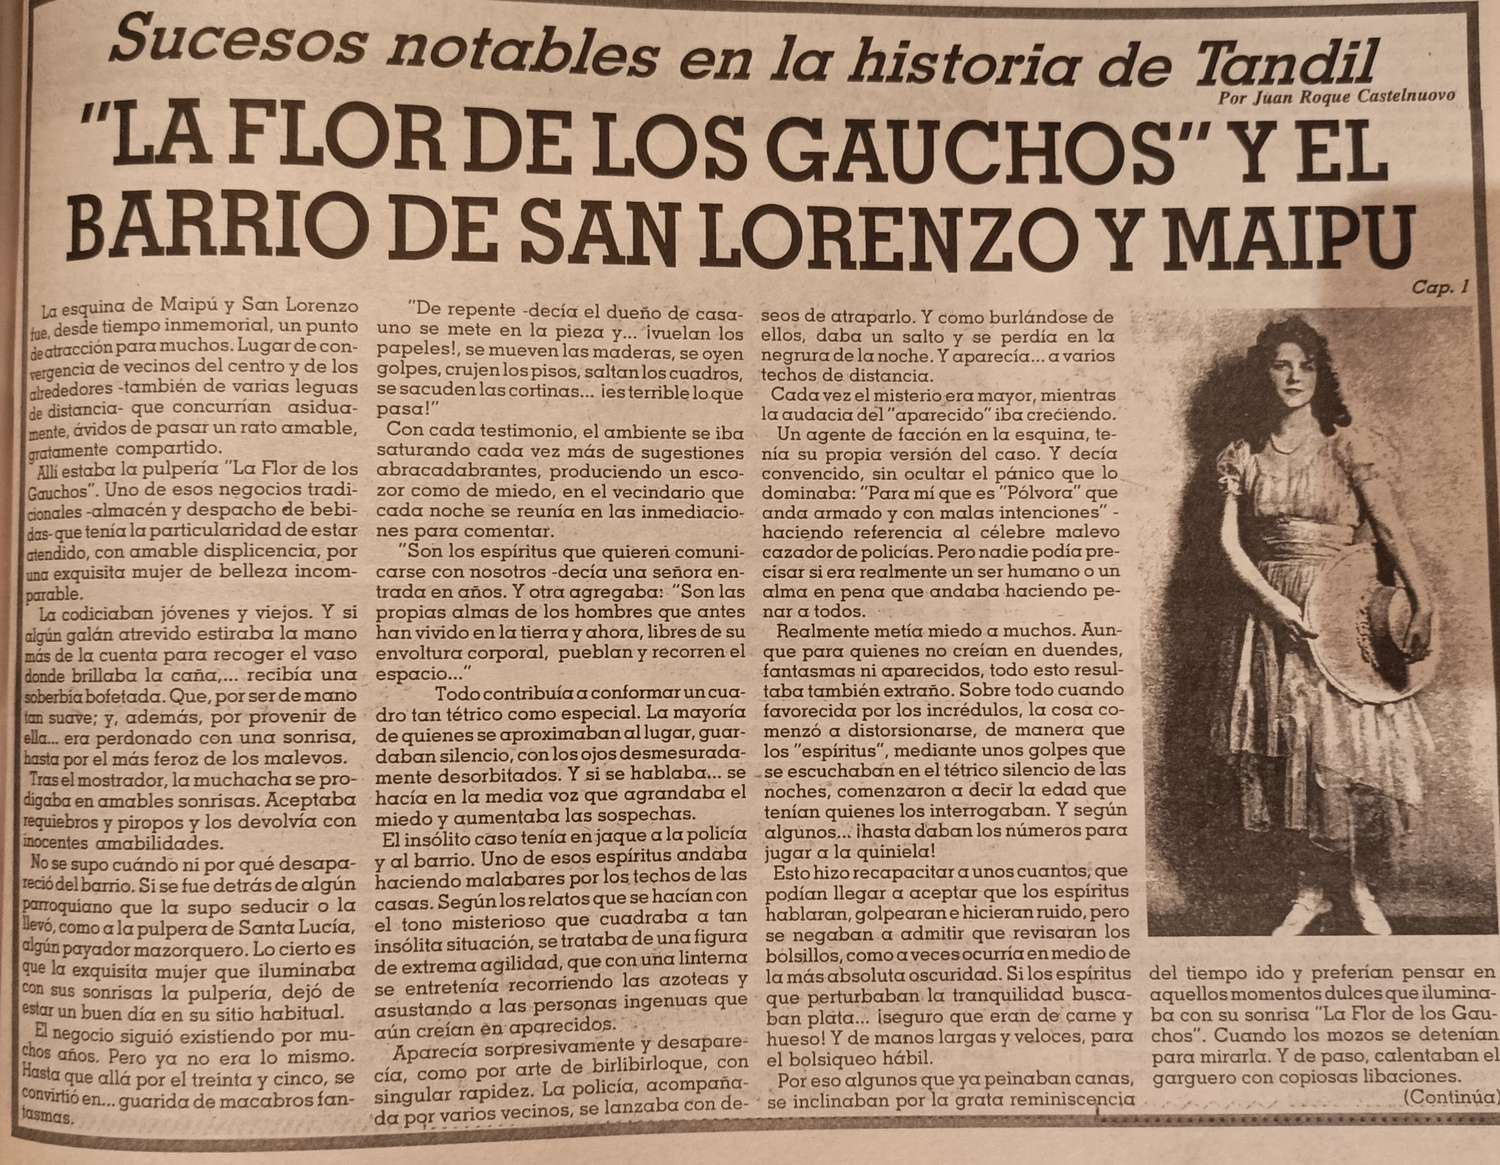 "La Flor de los Gauchos" y el barrio de San Lorenzo y Maipú - Cap. 1.